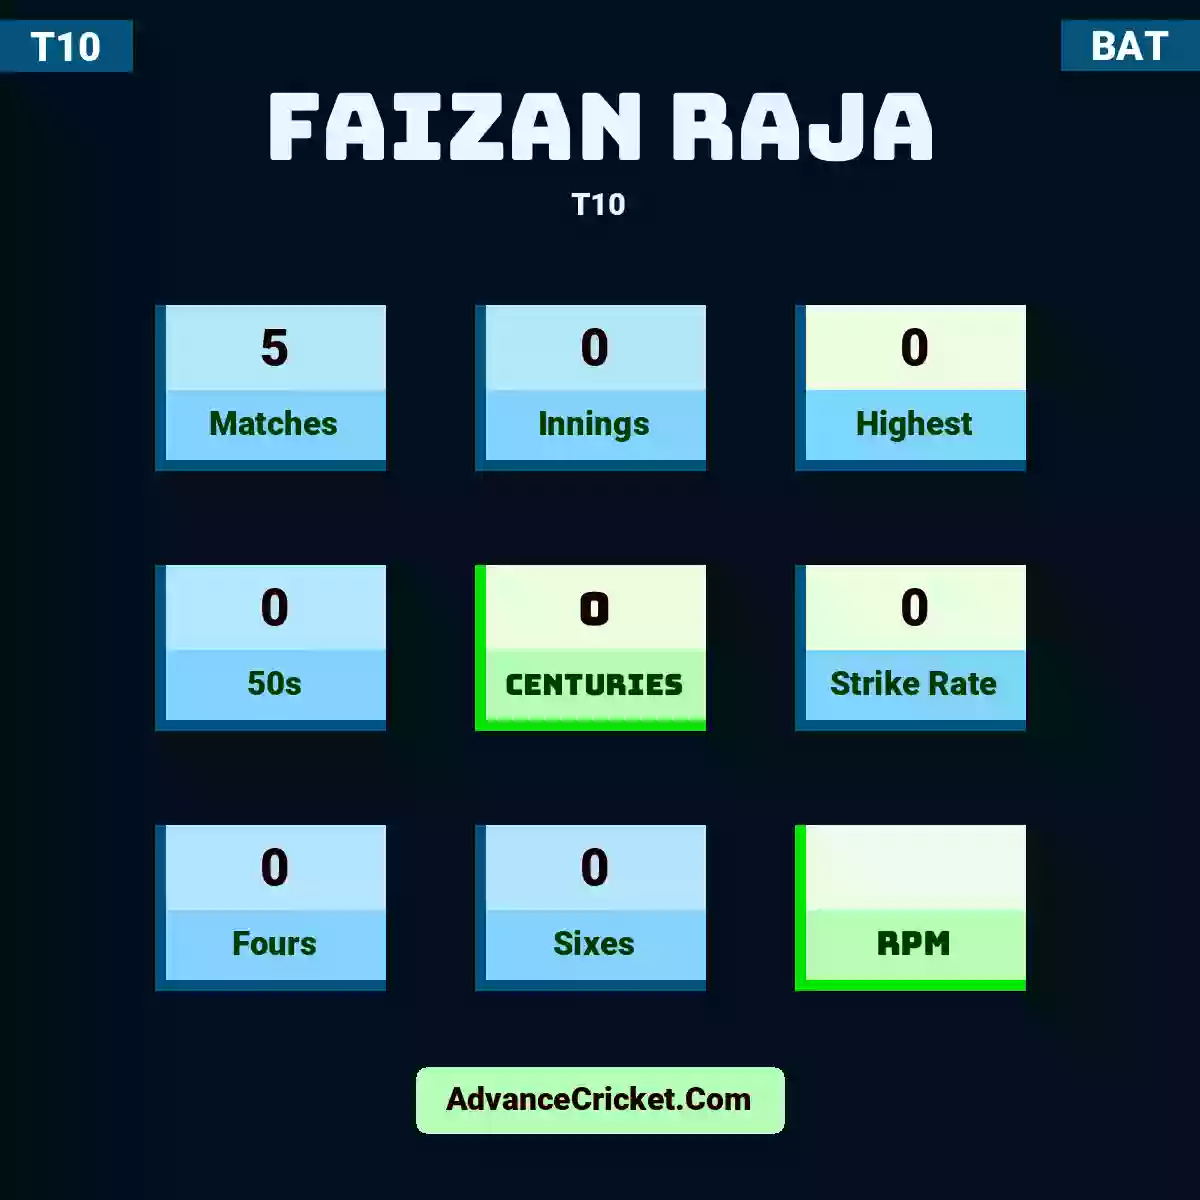 Faizan Raja T10 , Faizan Raja played 5 matches, scored 0 runs as highest, 0 half-centuries, and 0 centuries, with a strike rate of 0. F.Raja hit 0 fours and 0 sixes.